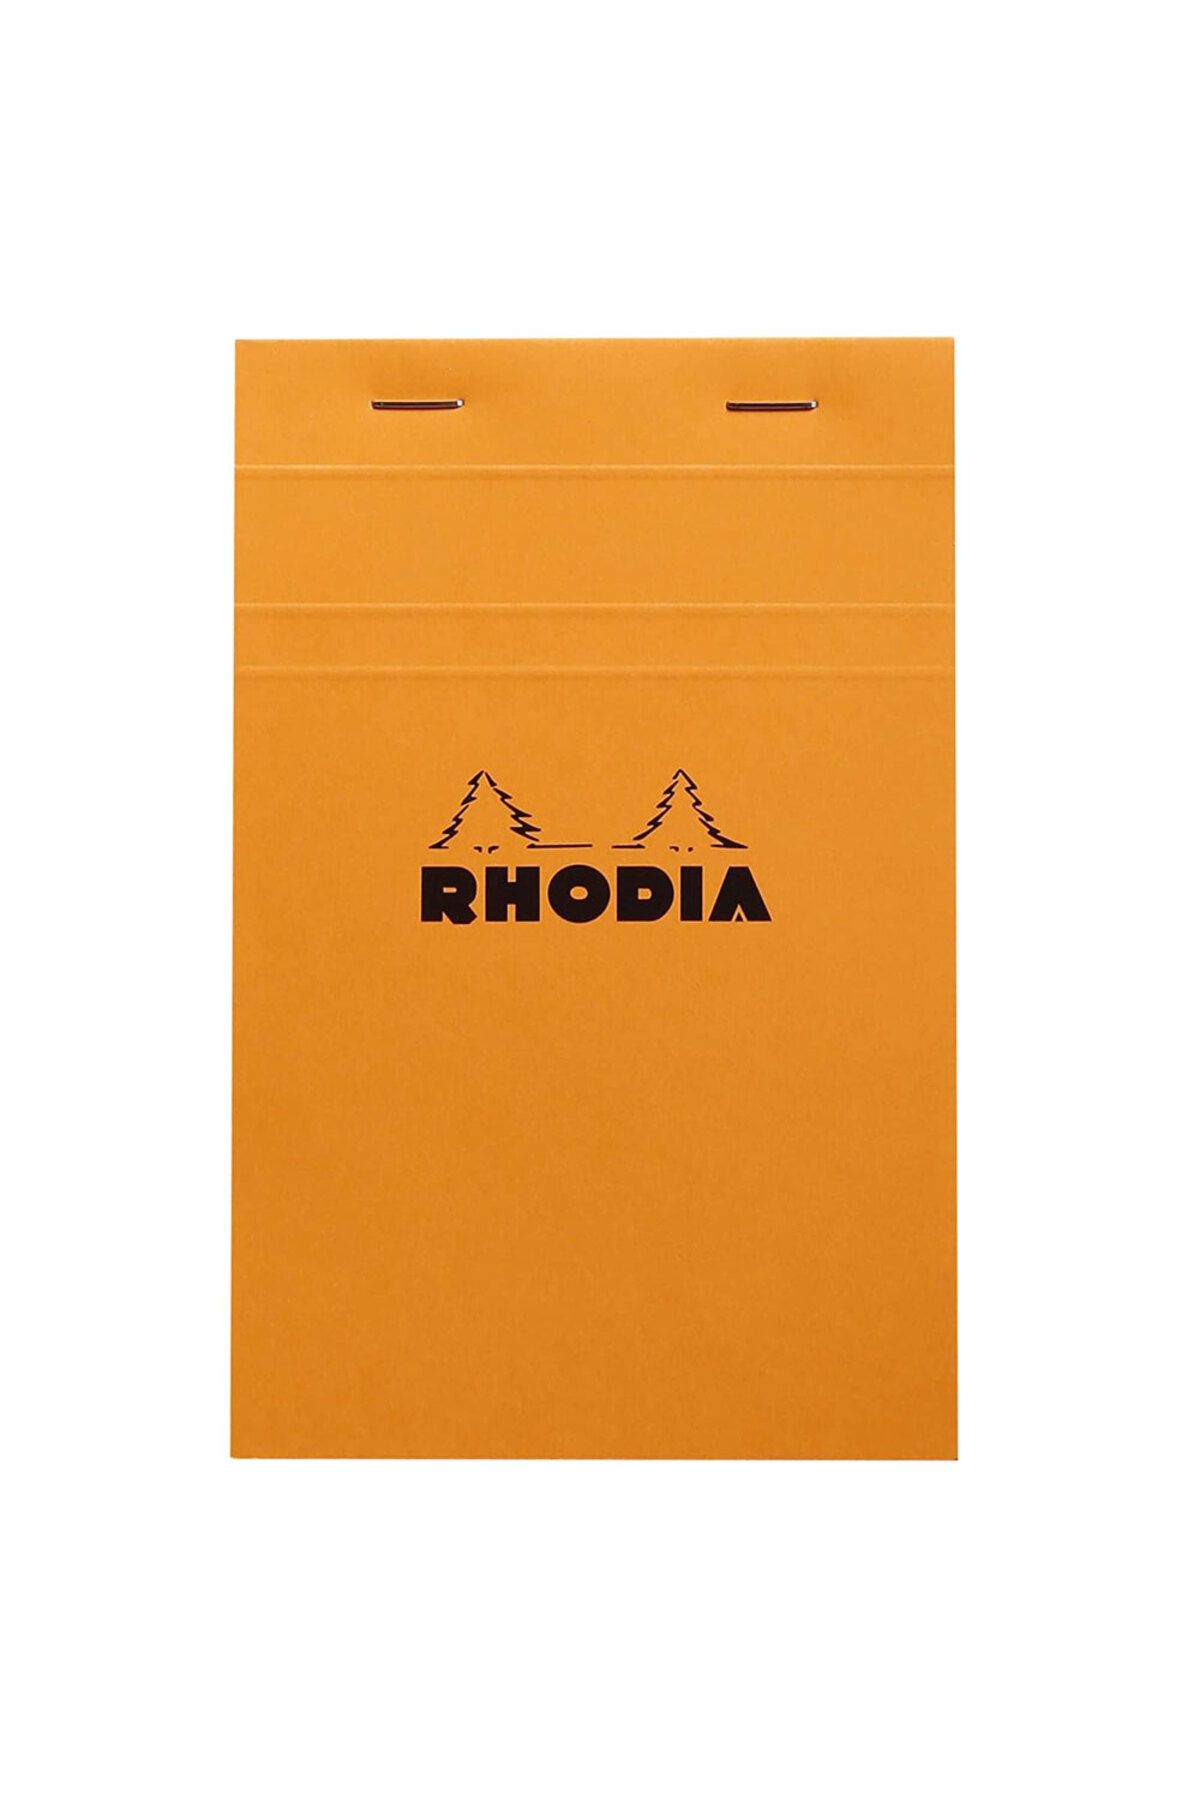 Rhodia Classic Üstten Zımbalı 11x17cm Kareli Defter Orange R14200